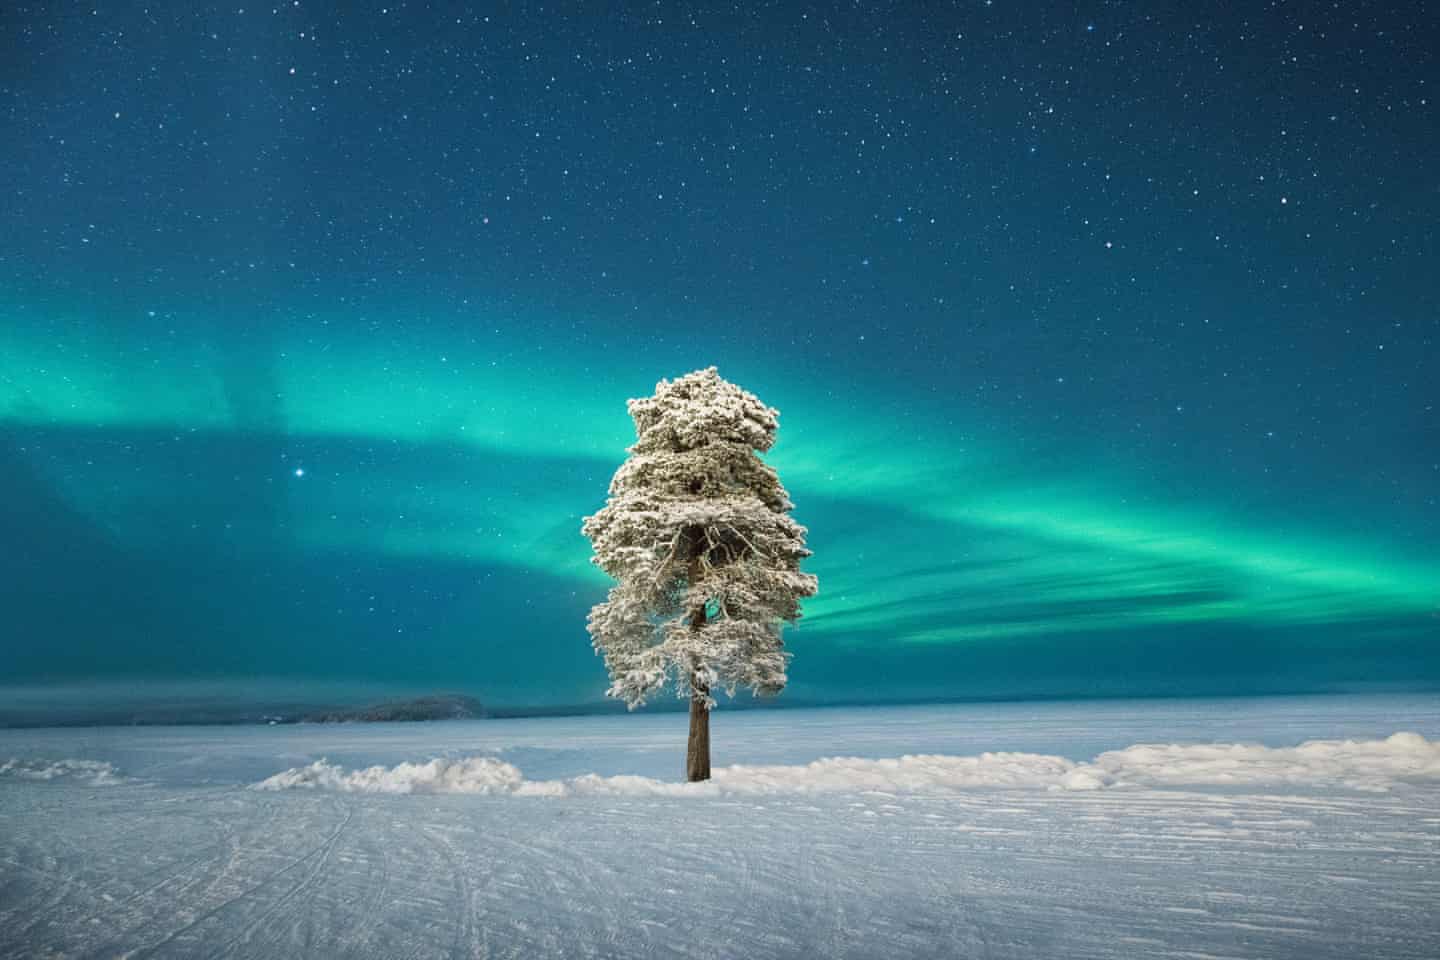  Cây cô đơn dưới cực quang ở vùng Scandinavia của nhiếp ảnh gia Tom Archer đoạt giải nhì hạng mục Cực quang. Khi anh tìm thấy cái cây này, anh quyết định đợi điều kiện sương mù thay đổi và không thể tin vào vận may của mình khi bầu trời quang đãng và cực quang xuất hiện ở một điểm hoàn hảo.